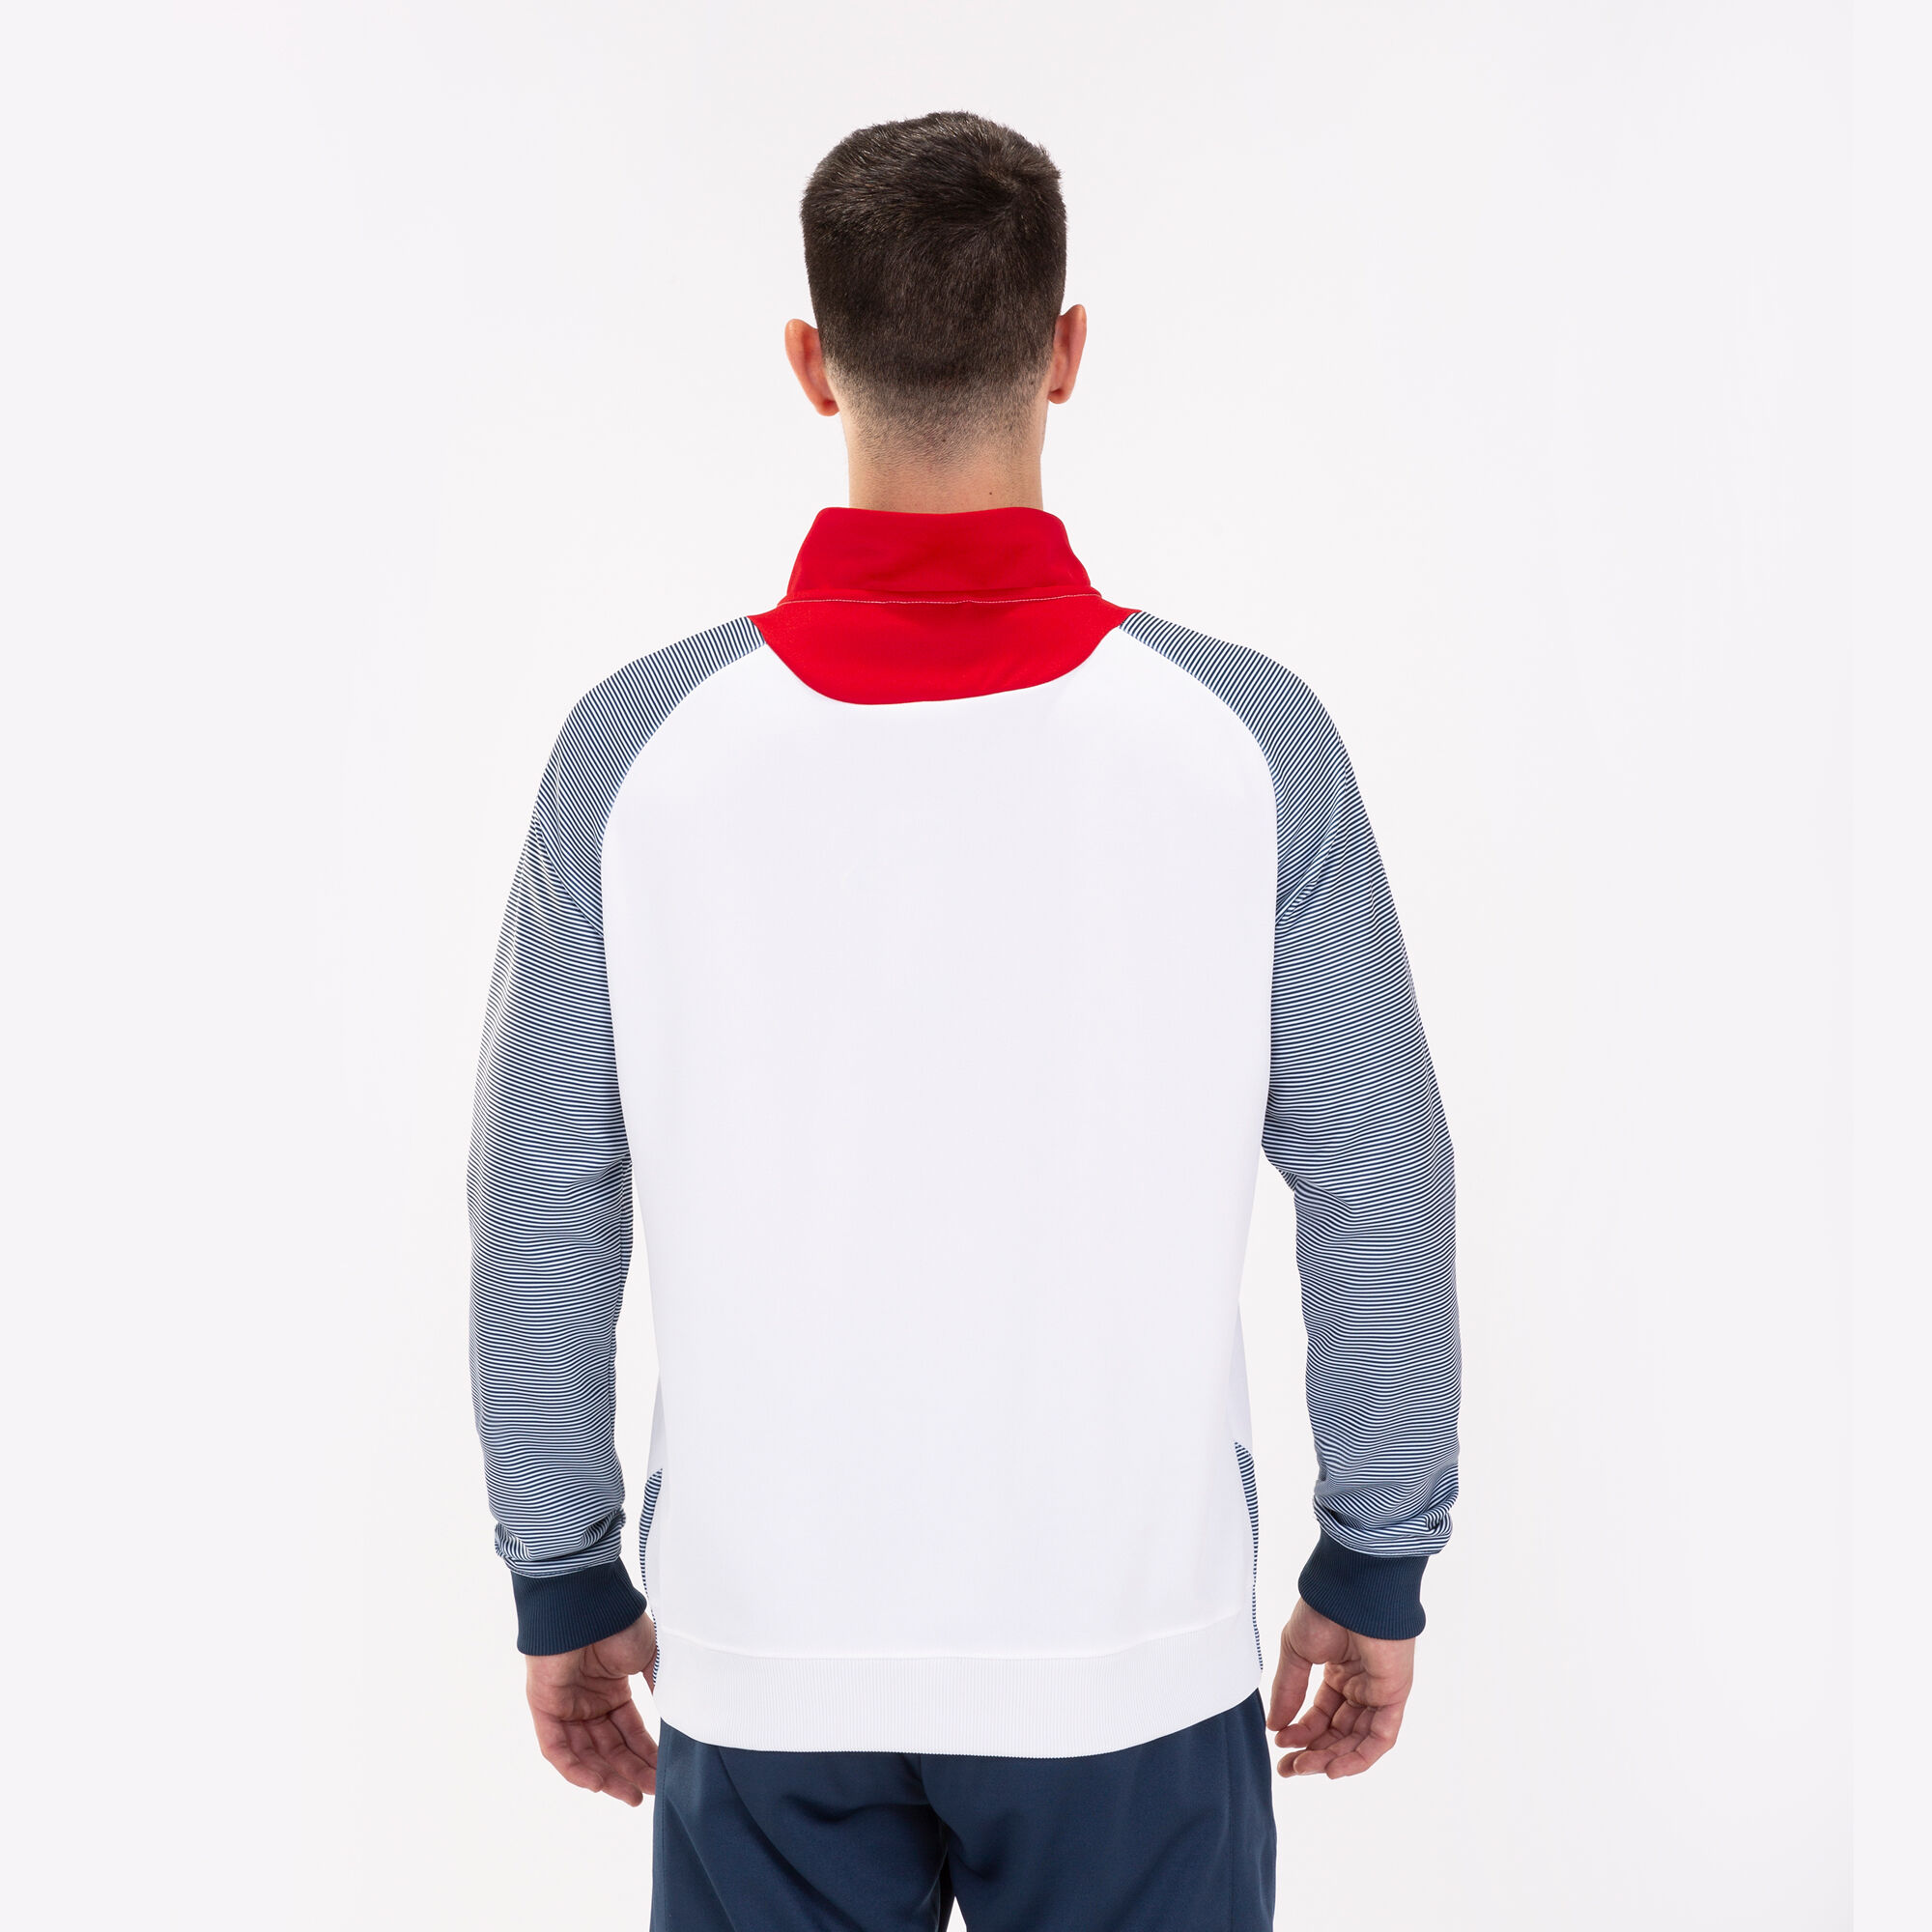 Jachetă bărbaȚi Essential II alb bleumarin roșu